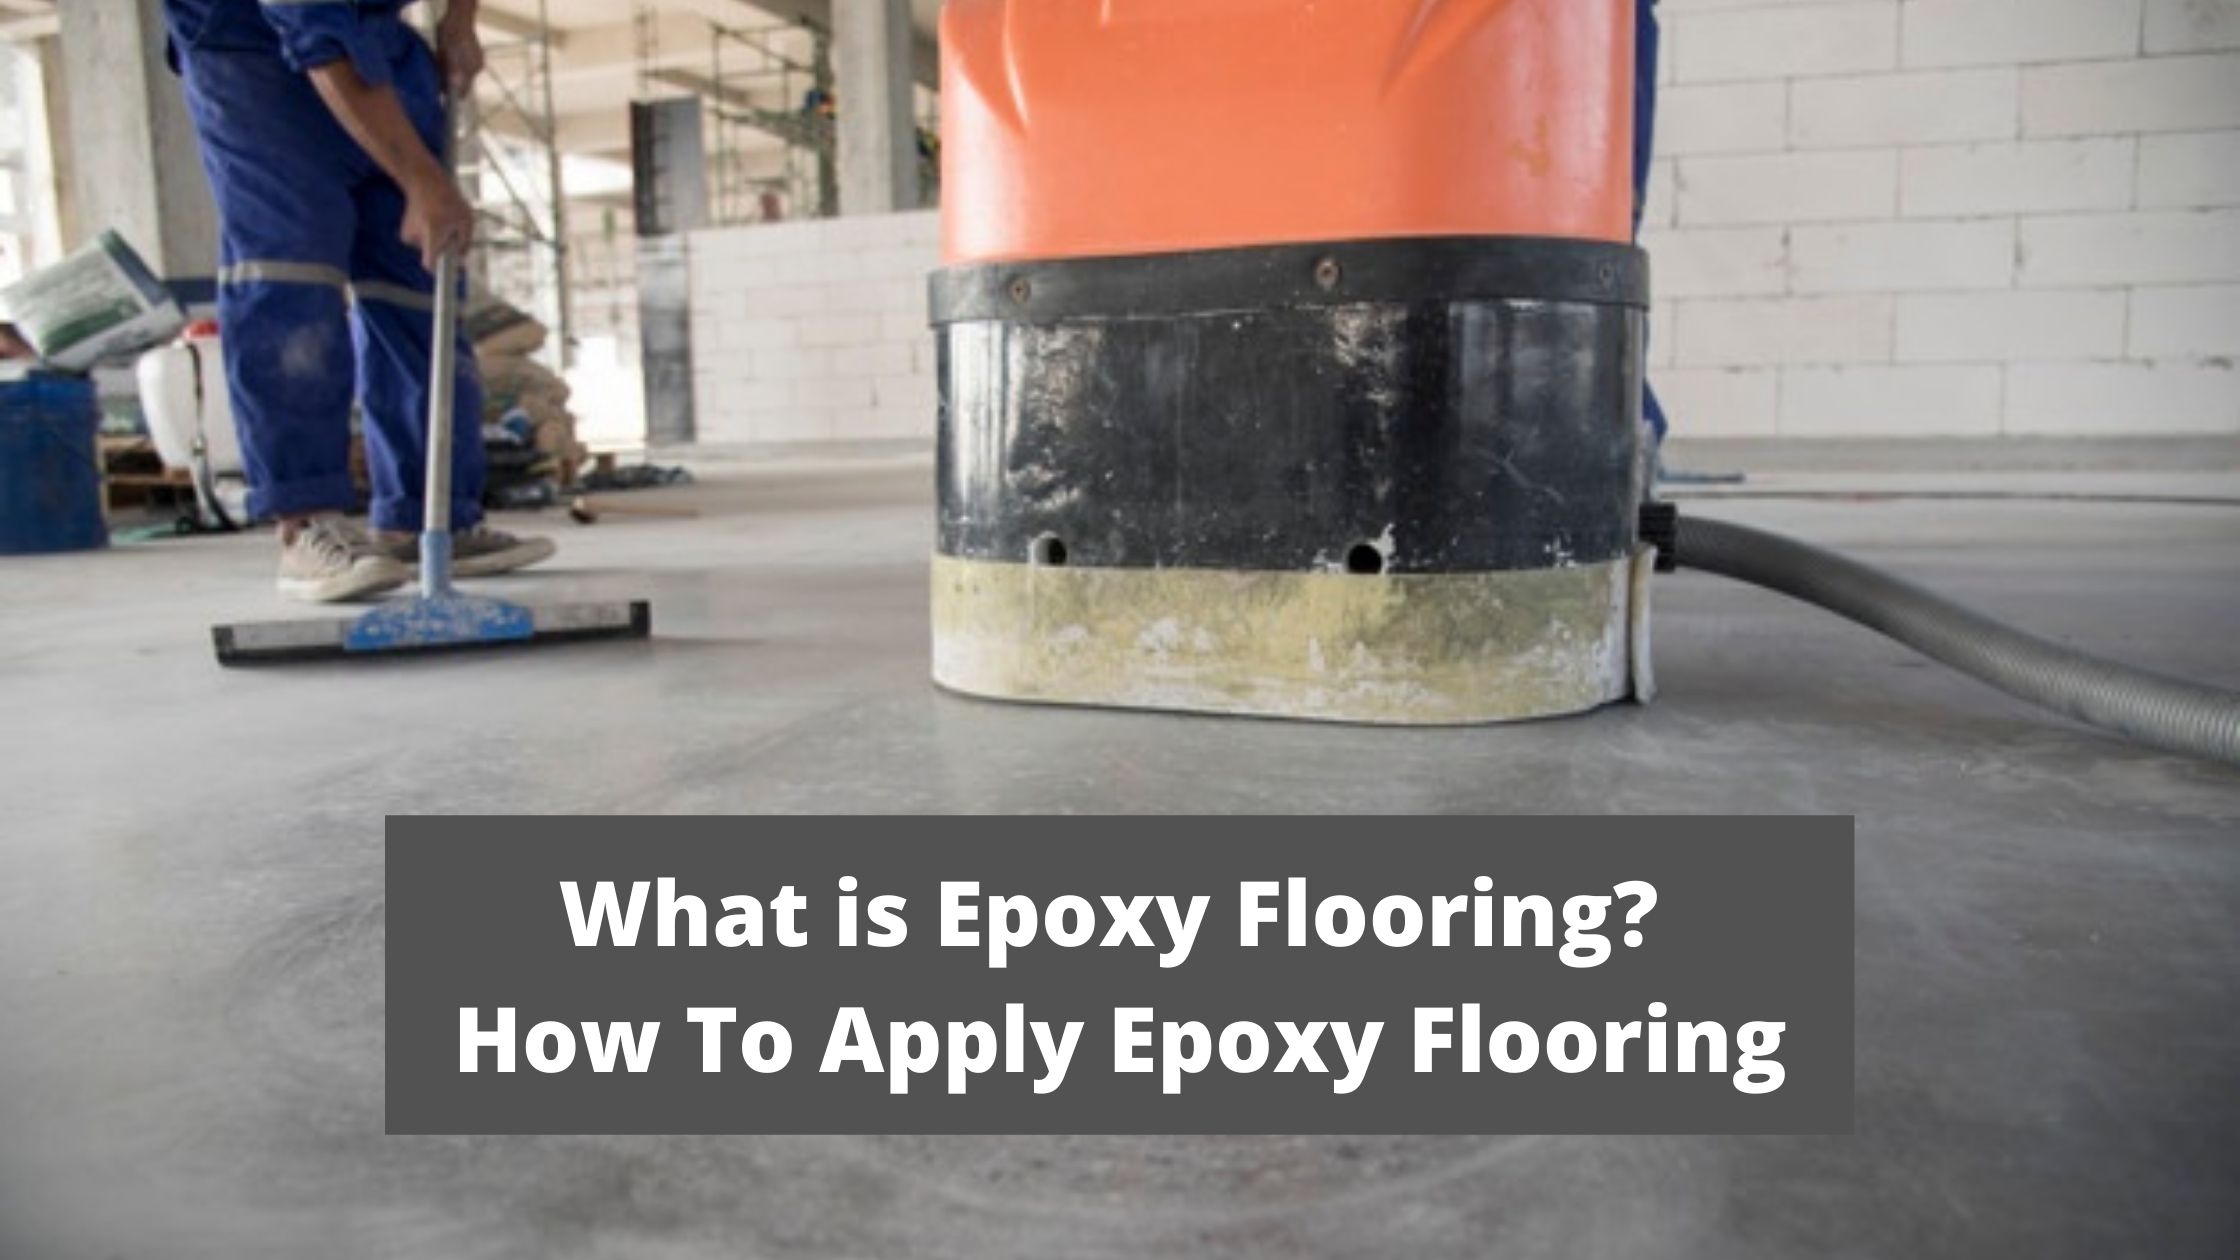 How To Apply Epoxy Flooring